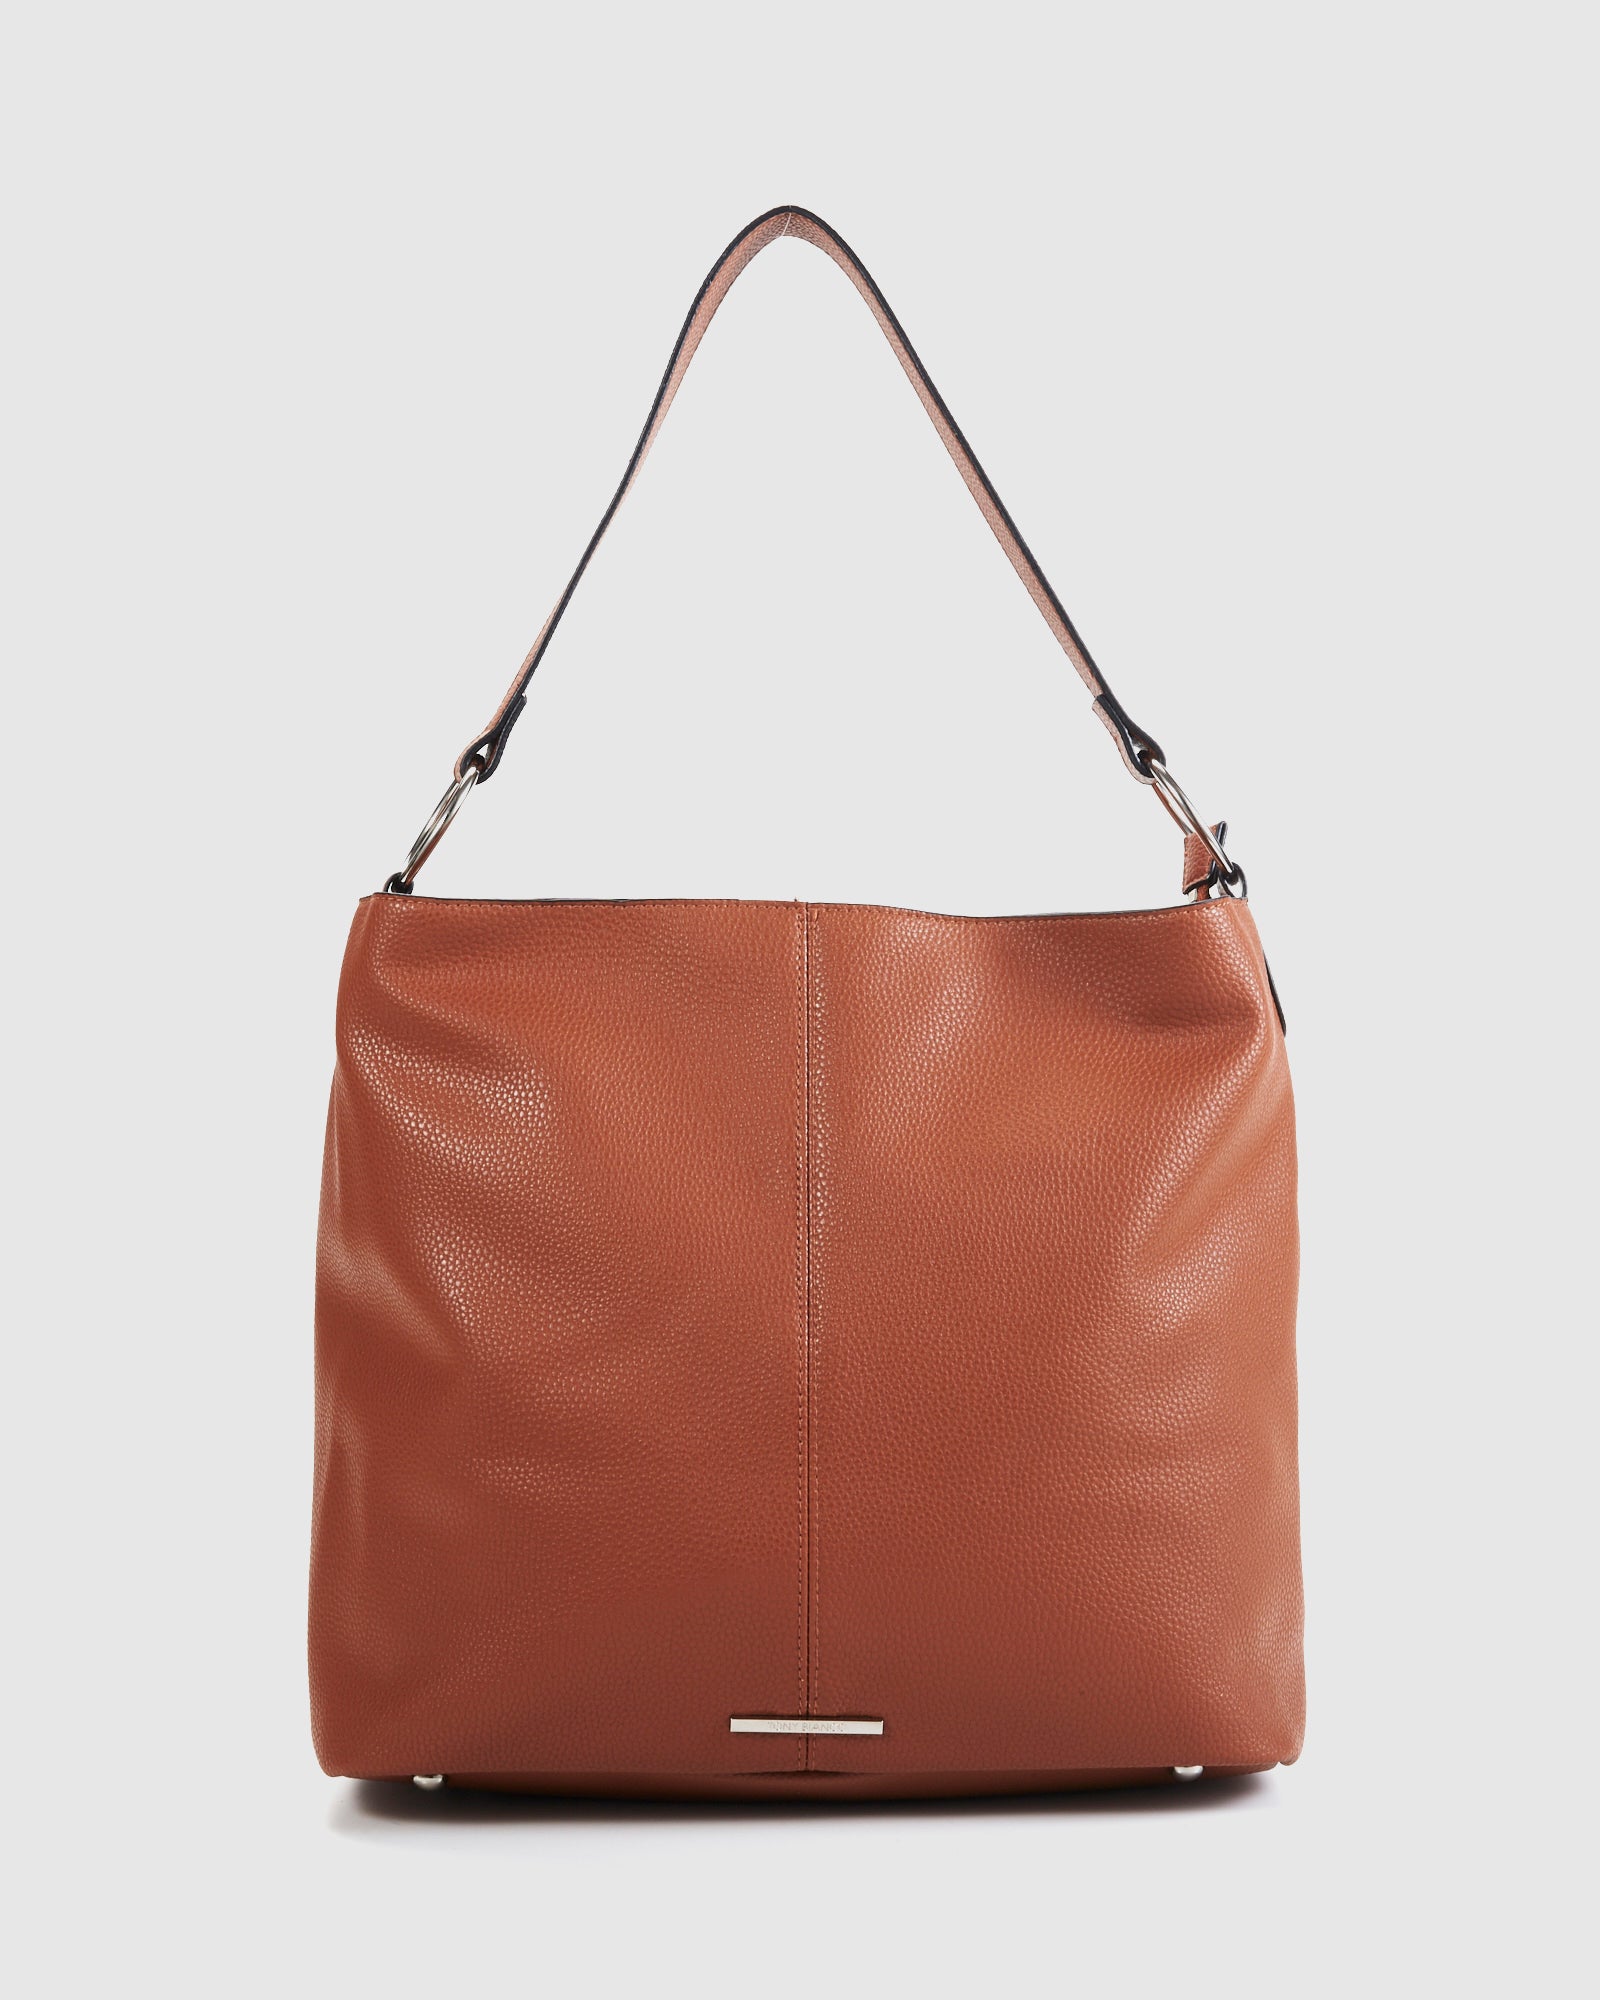 Tony Bianco Women's Vegan Leather Handbag